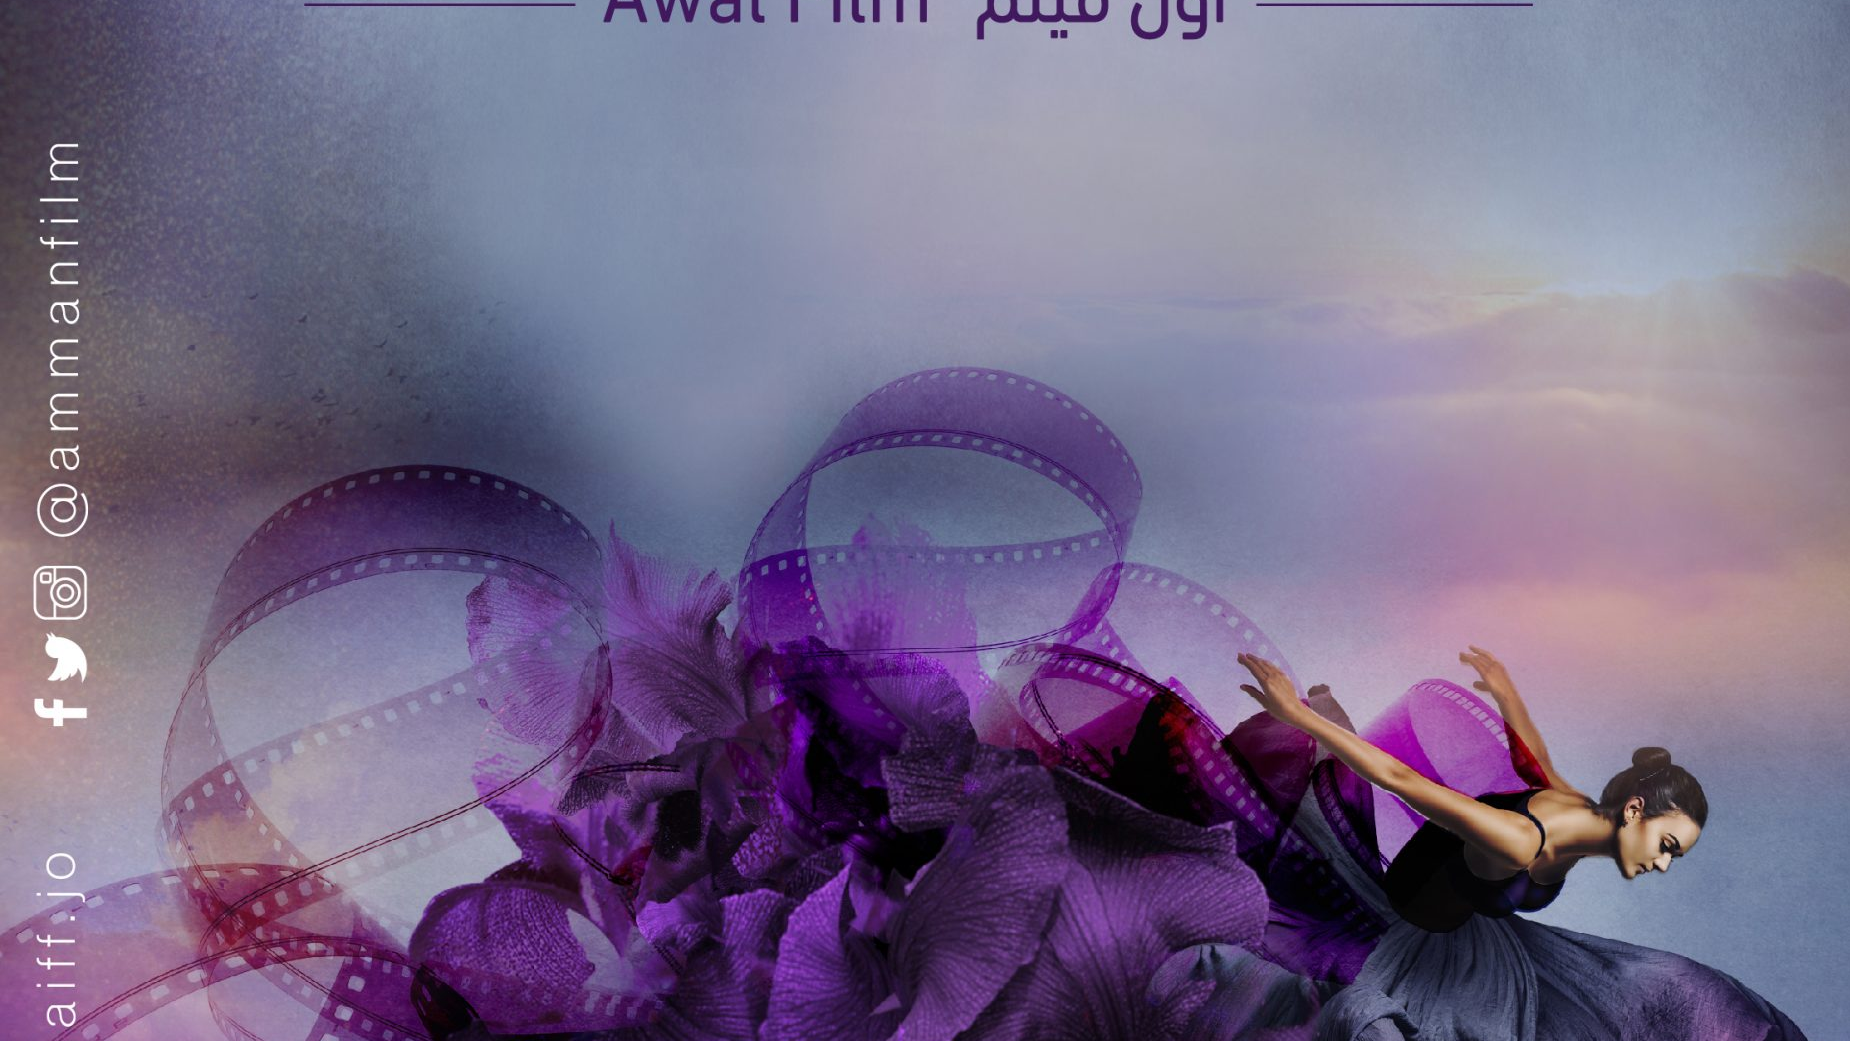 "هدى" فيلم أردني قصير يحكي عن فكرة الزواج مهما كلف الأمر